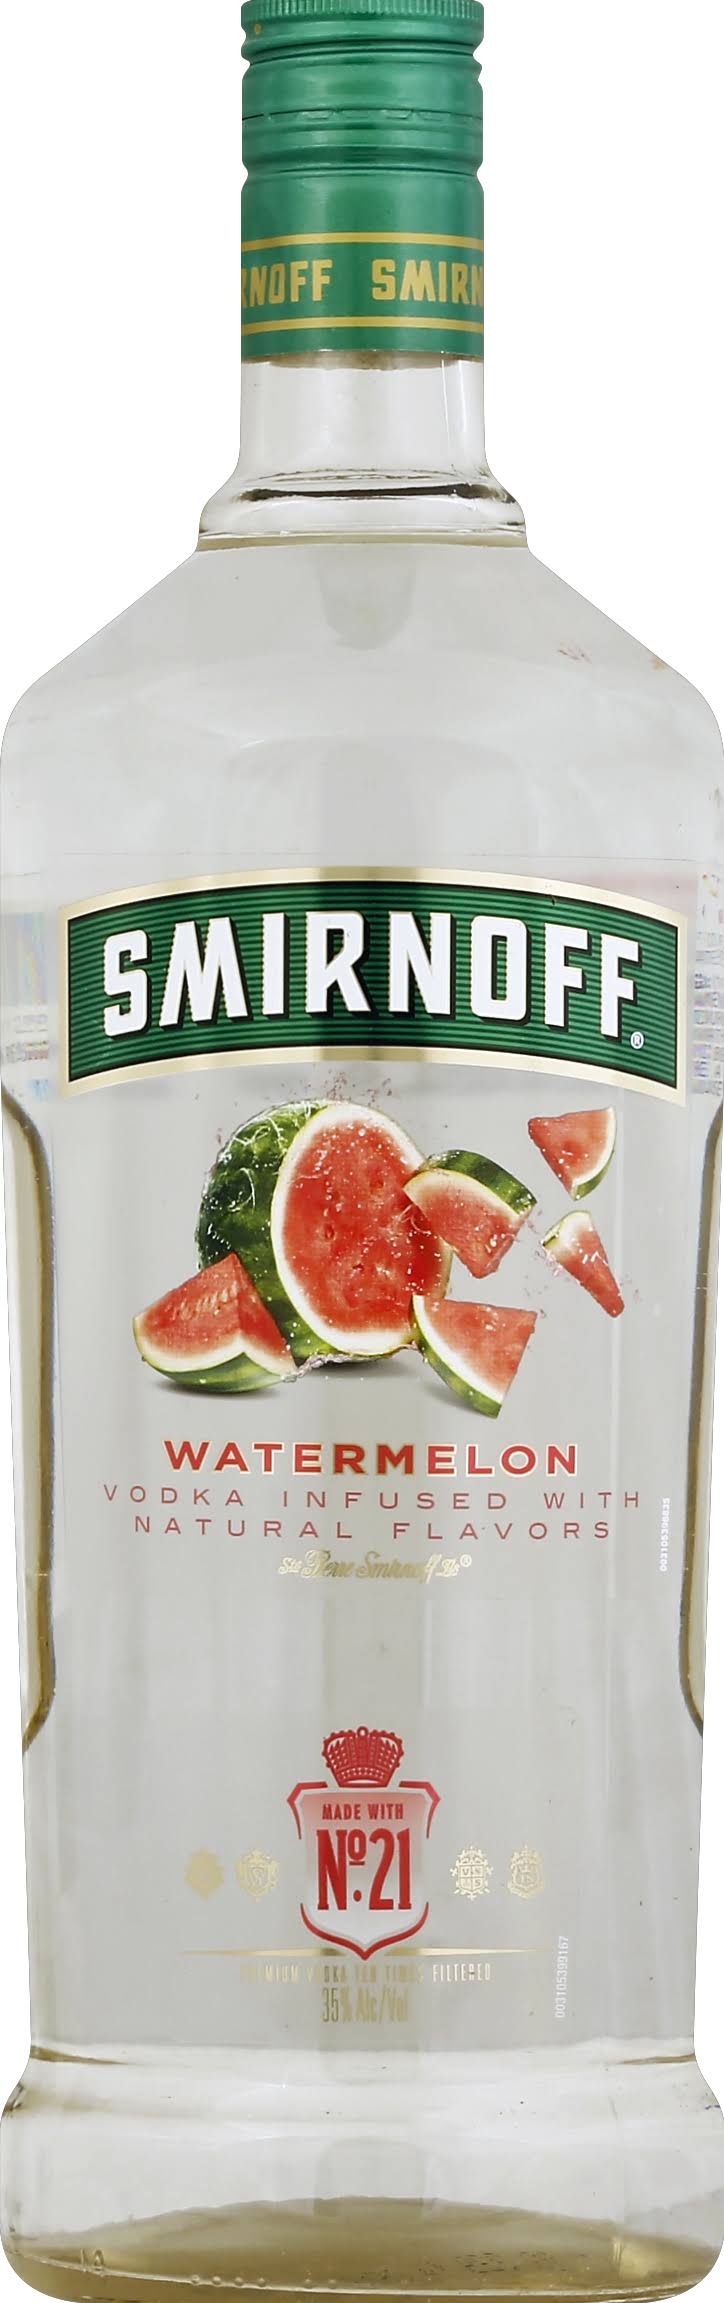 Smirnoff Watermelon Vodka - 1.75L